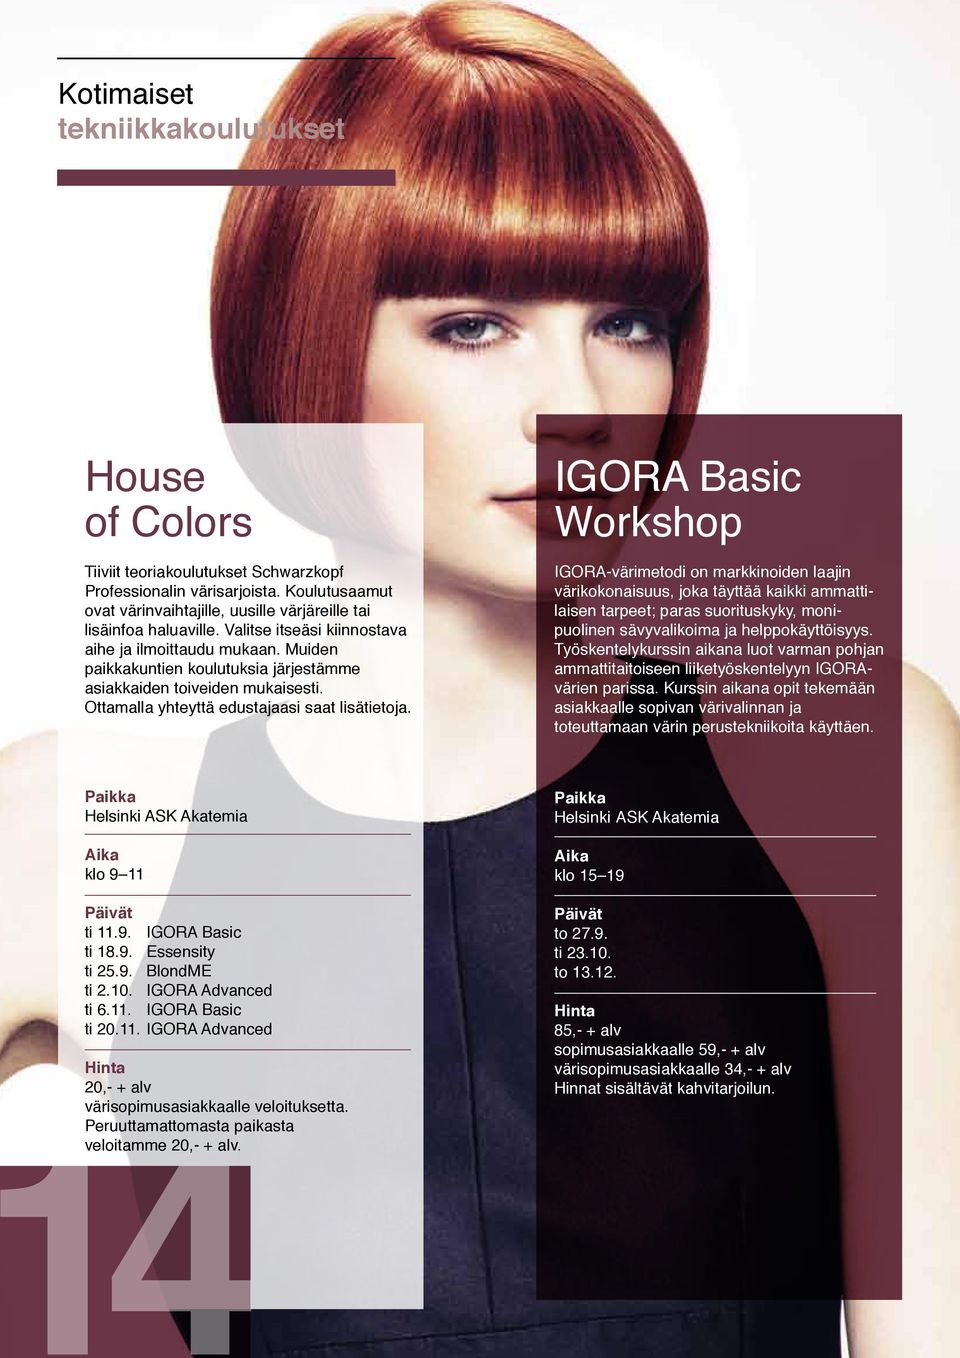 IGORA Basic Workshop IGORA-värimetodi on markkinoiden laajin värikokonaisuus, joka täyttää kaikki ammattilaisen tarpeet; paras suorituskyky, monipuolinen sävyvalikoima ja helppokäyttöisyys.